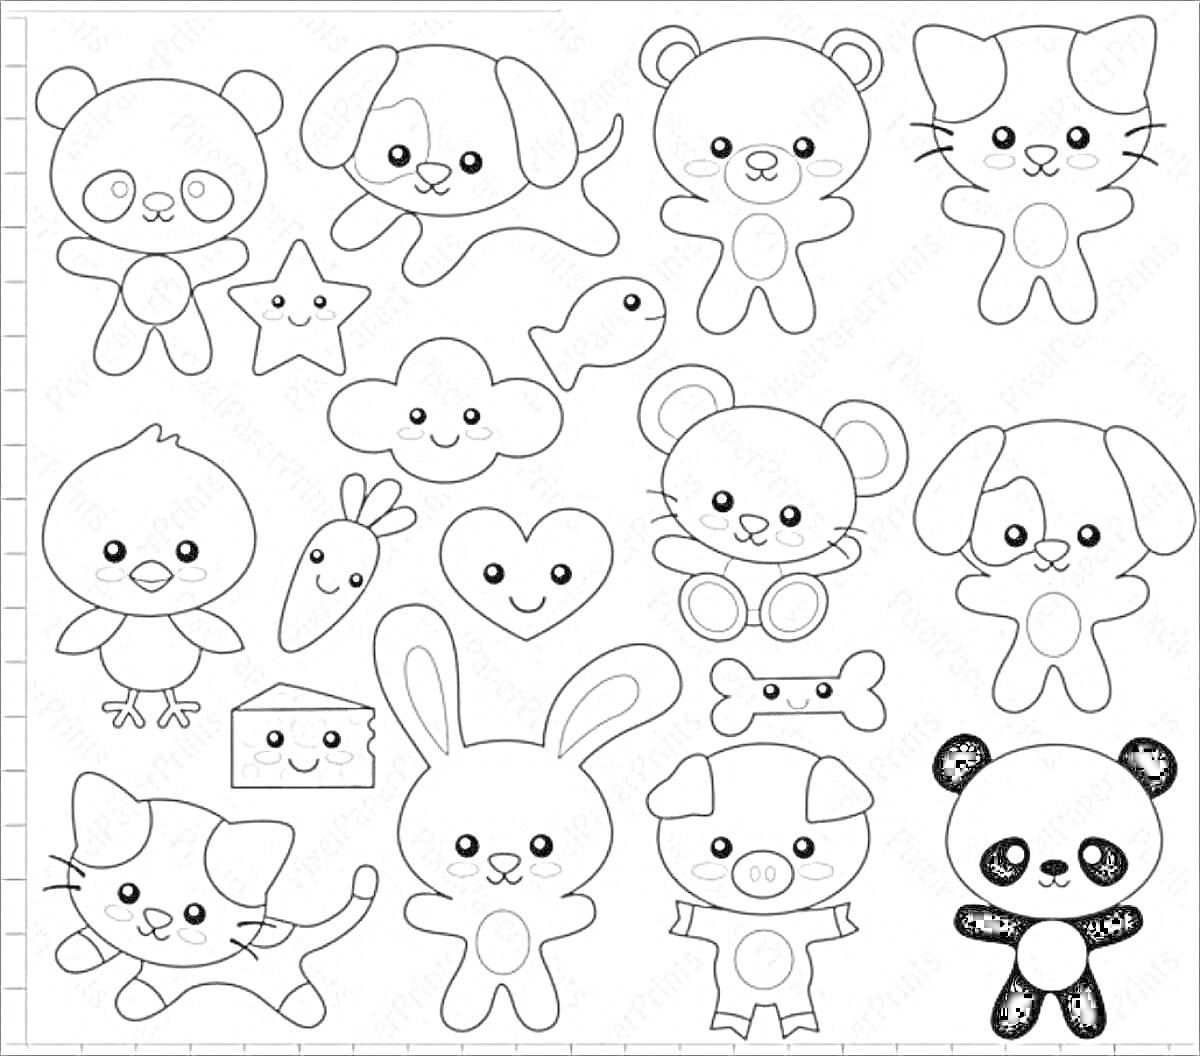 Раскраска Маленькие милые животные и предметы (панда, медвежонок, котенок, рыбка, сердечко, звезда, кролик, поросенок, косточка, морковка, домик, цыпленок, мышонок, щенок)